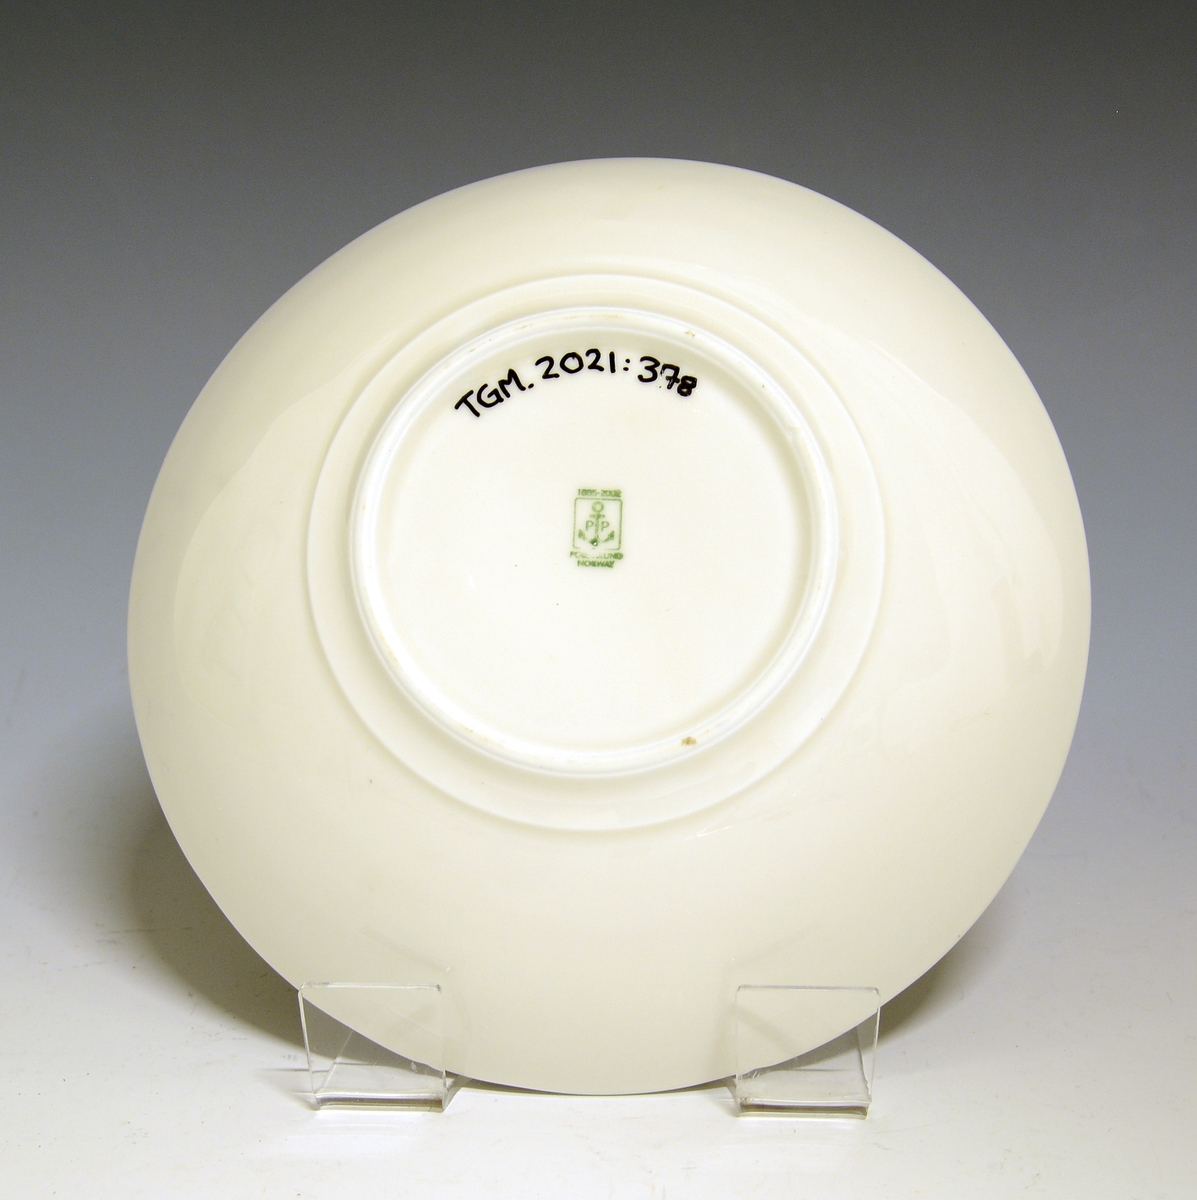 Liten bolle av porselen med hvit glasur. Dekorert med rødkløver
Modell: 2700 Fiore av Eeva Terävä
Dekor: Trifolium